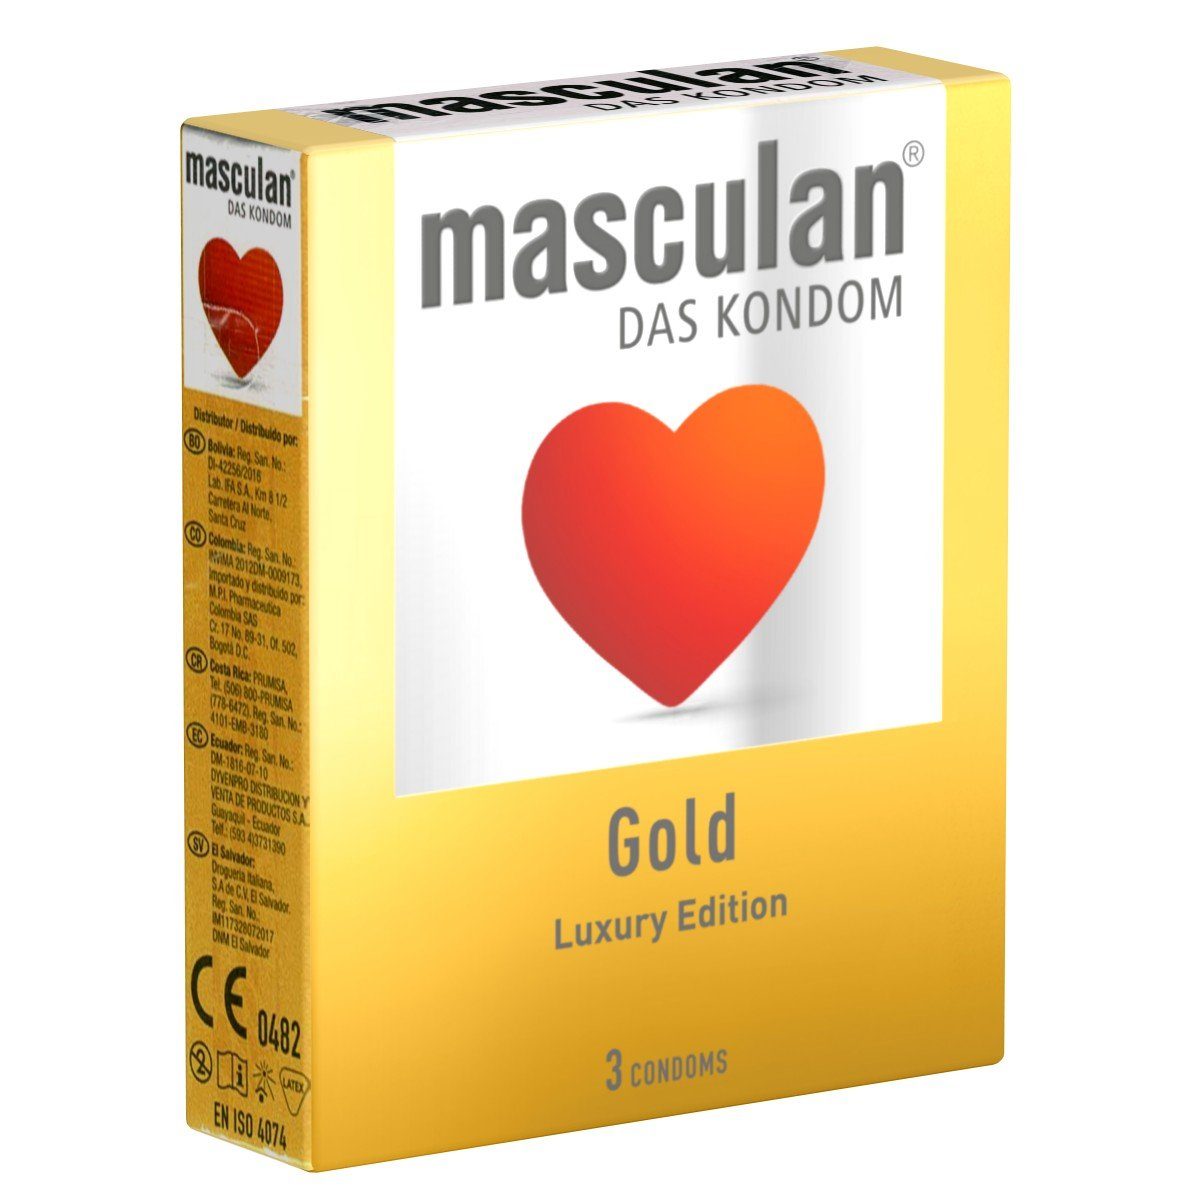 Masculan Kondome Gold Packung mit, 3 St., goldfarbige Kondome mit zartem Vanilleduft